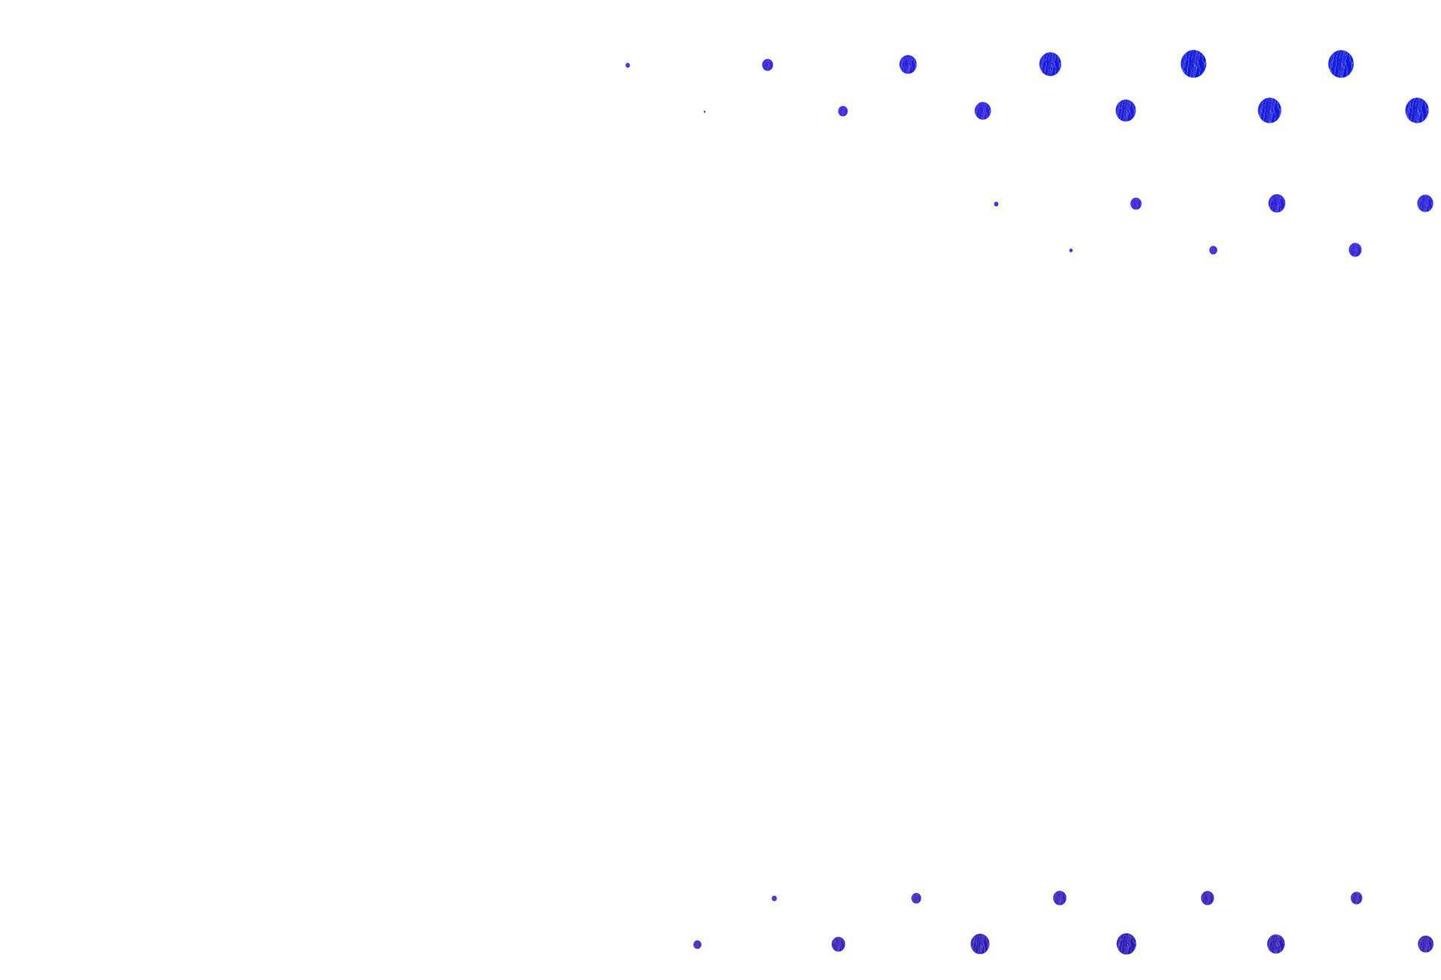 hellrosa, blauer Vektorhintergrund mit Punkten. vektor